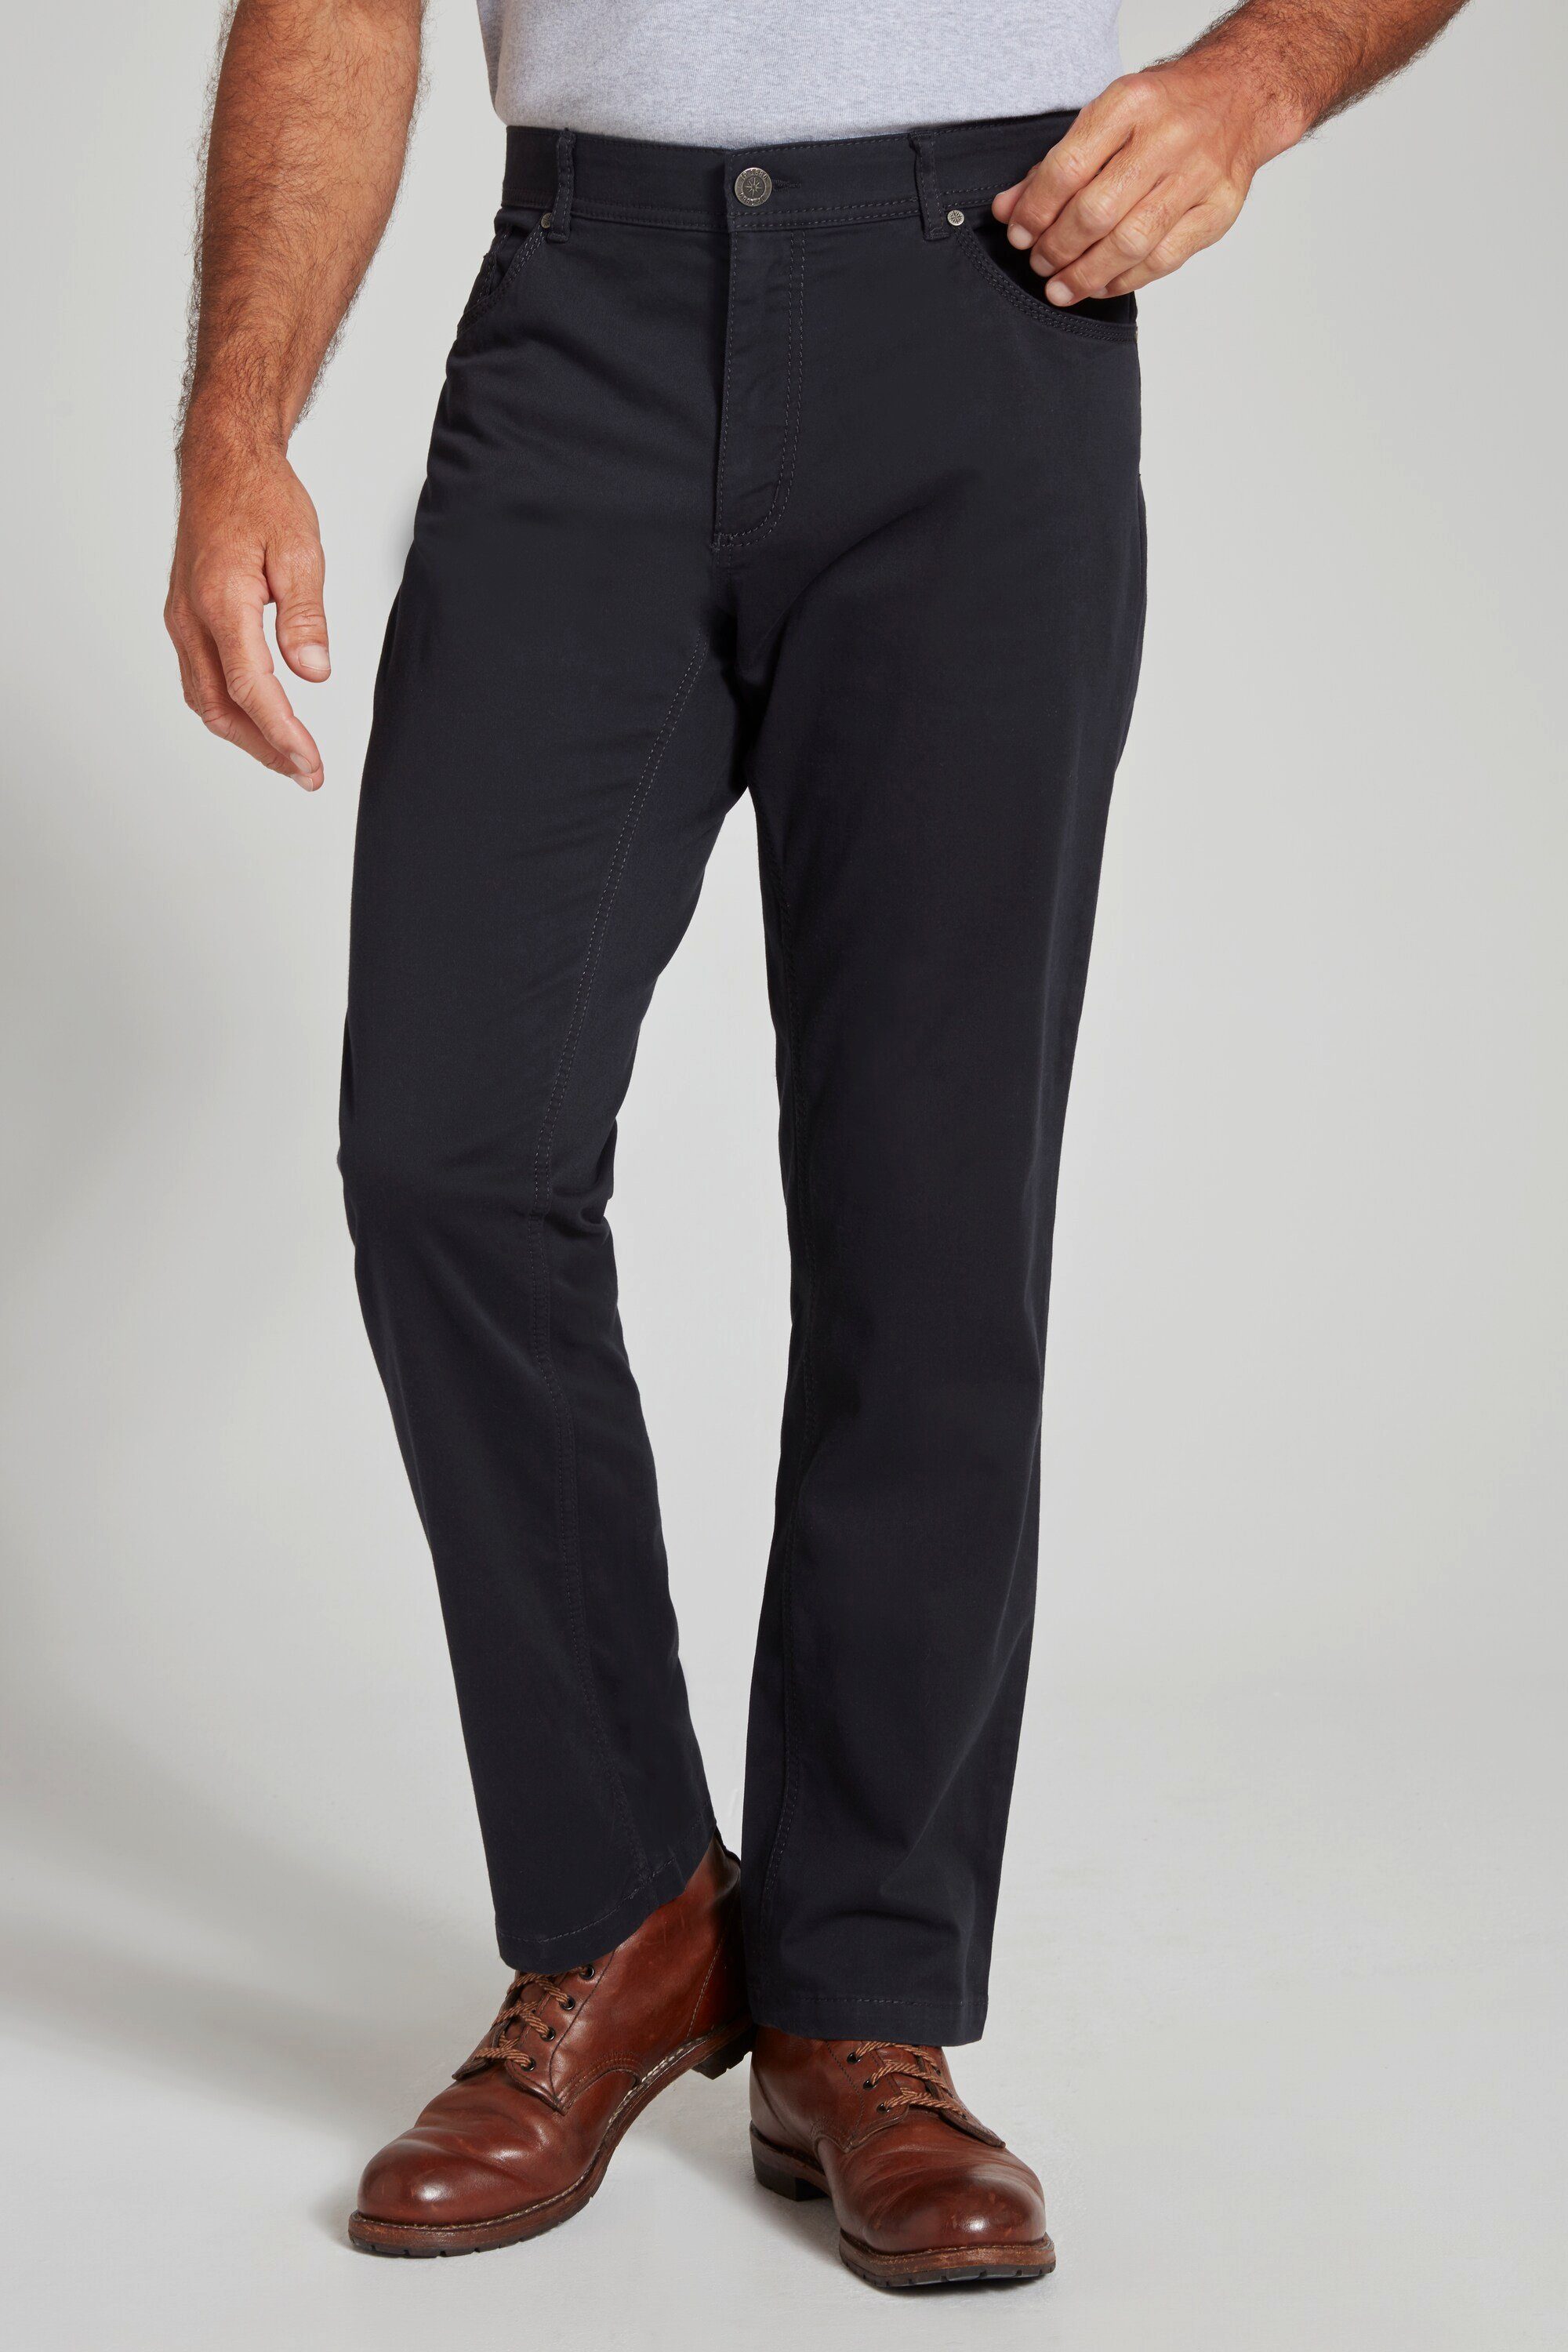 marine JP1880 Fit elastischer Regular dunkel 5-Pocket-Jeans Bund 5-Pocket Hose